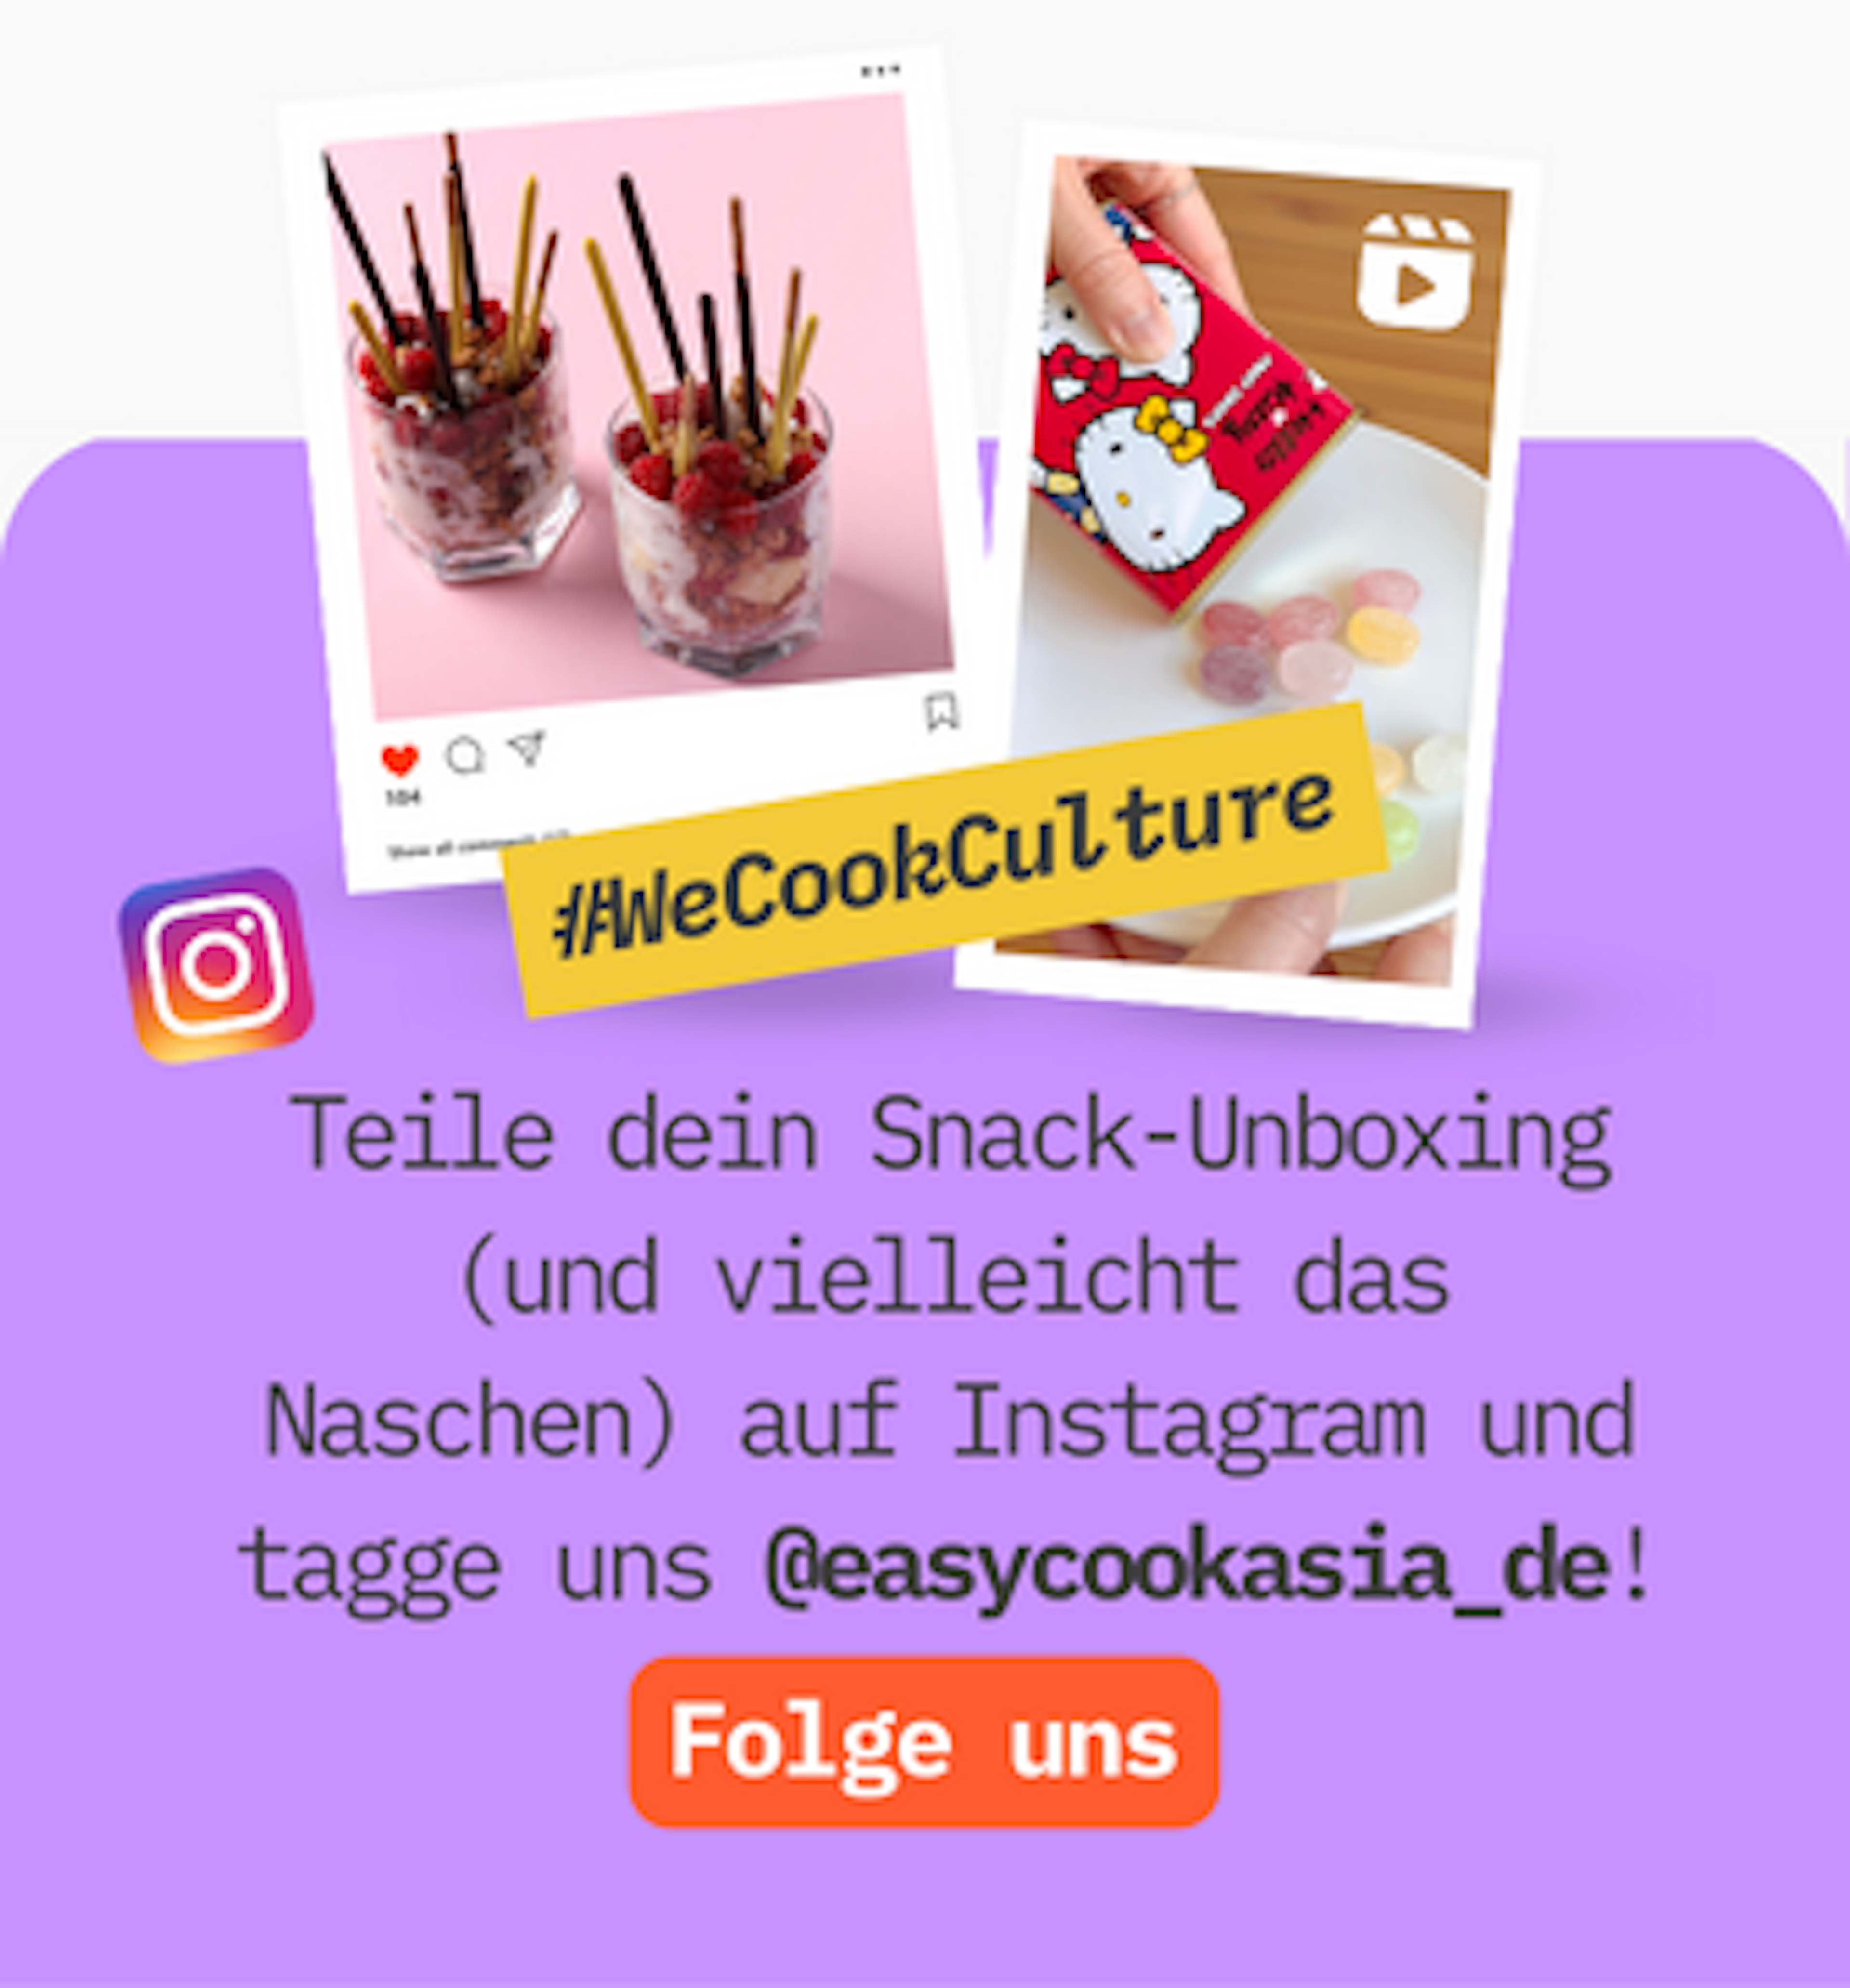 📸 Teile dein Snack-Unboxing und Tasting auf Instagram und tagge uns! @easycookasia_de